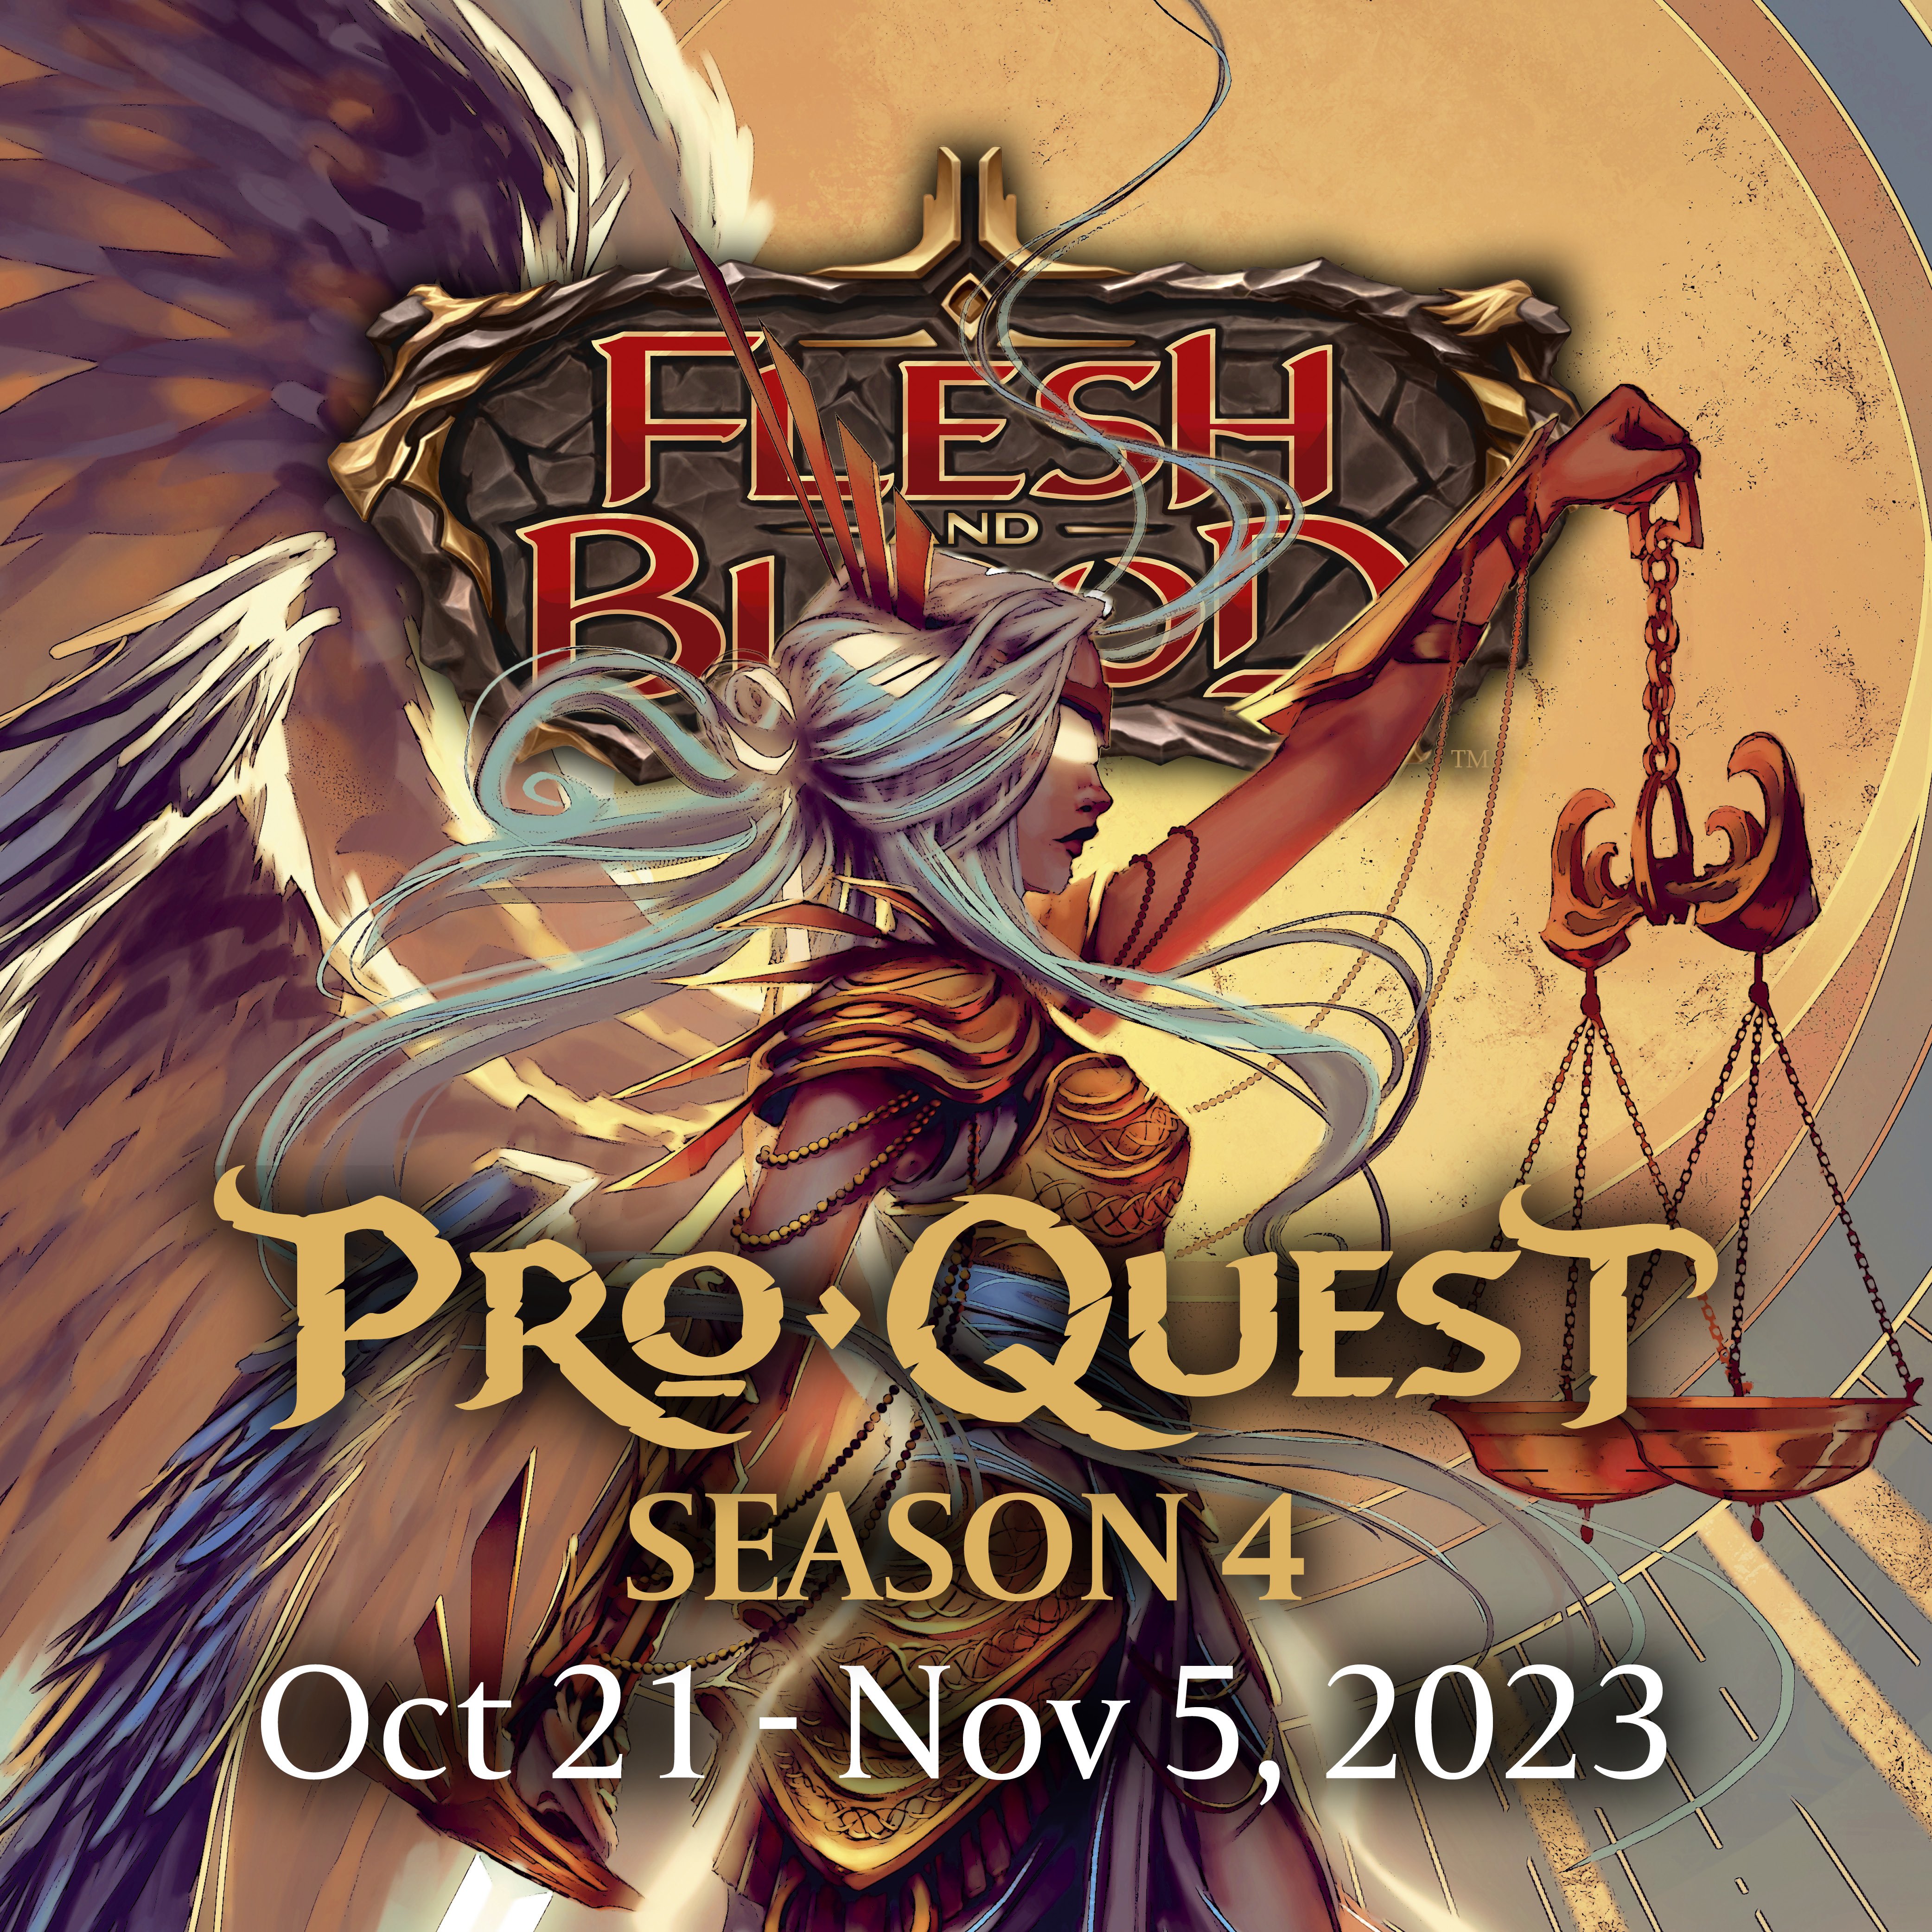 proquest season 4 promotional image